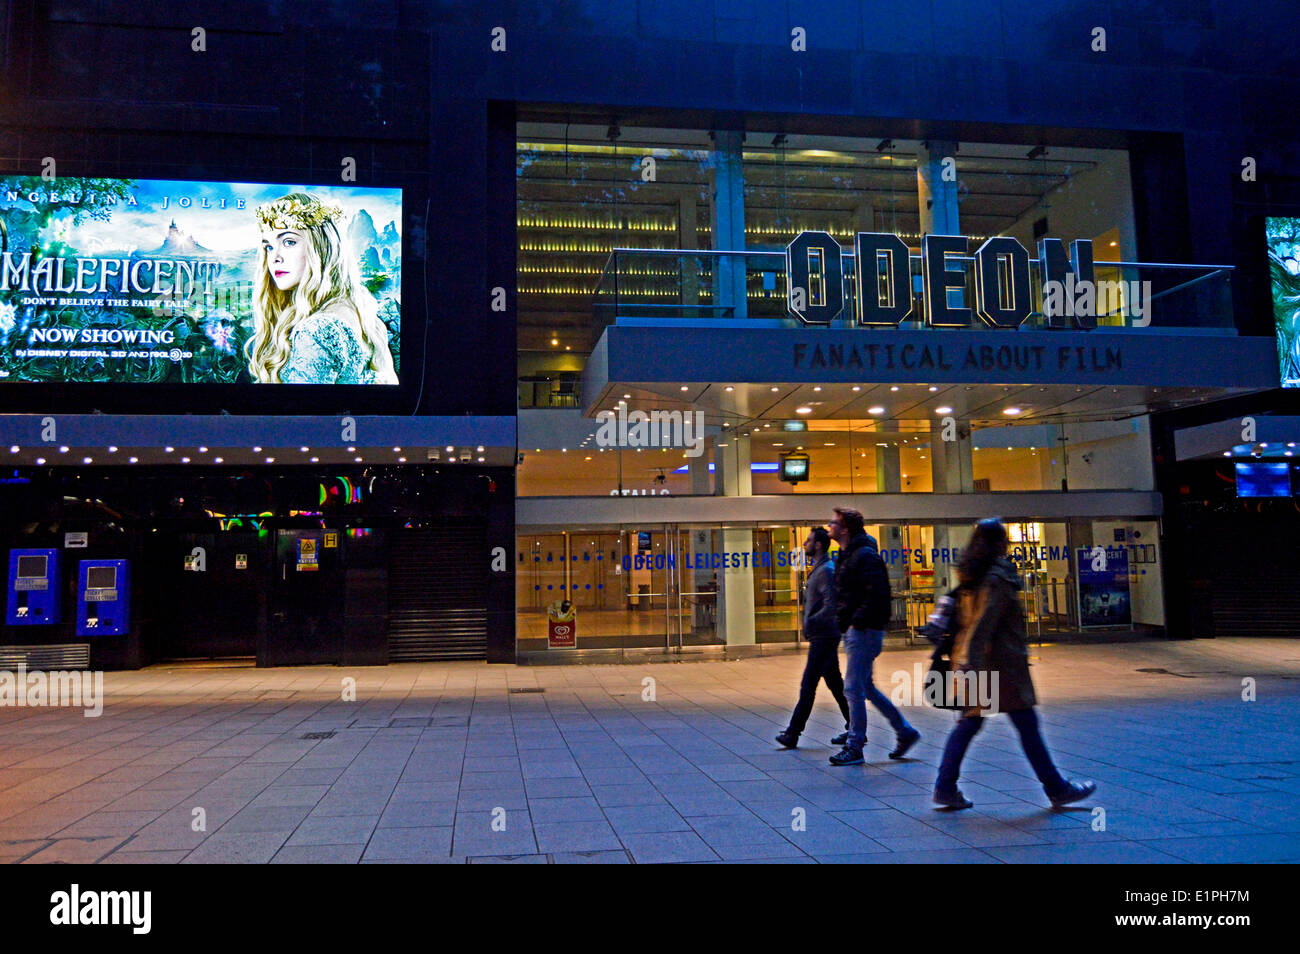 Cinéma Odéon la nuit, Leicester Square, West End, Londres, Angleterre, Royaume-Uni Banque D'Images